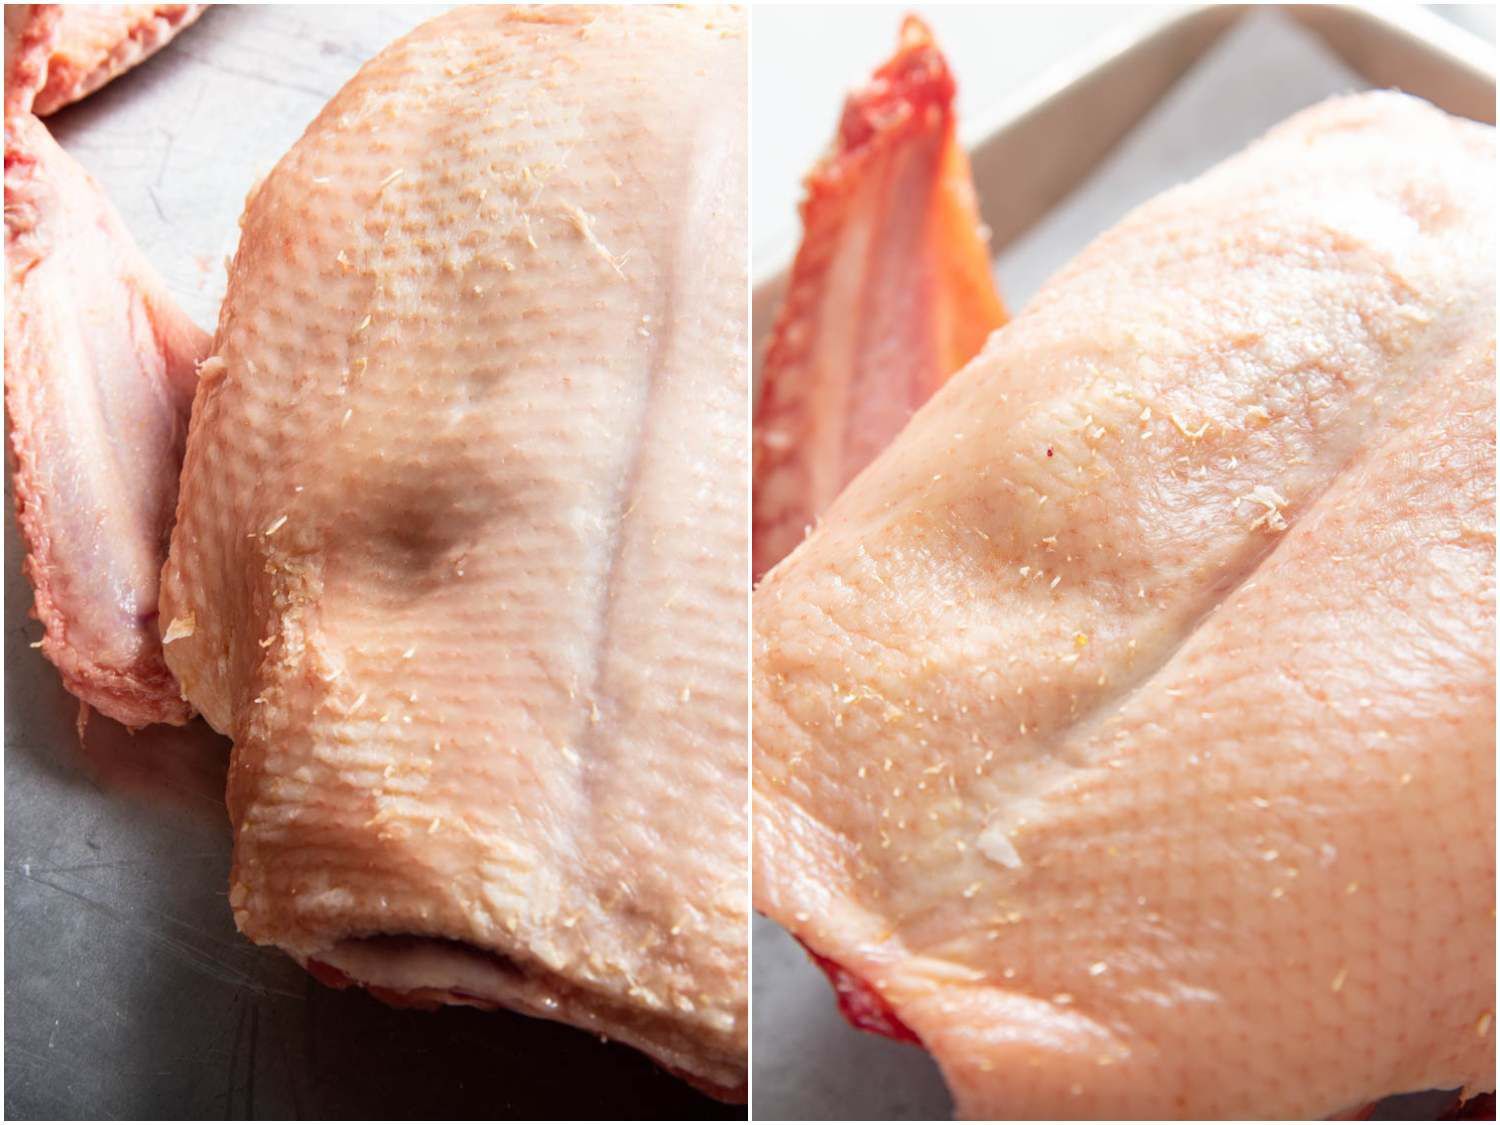 用手指按压鸭胸时柔软程度的差异照片拼贴。左:新鲜。右:干式陈酿2周